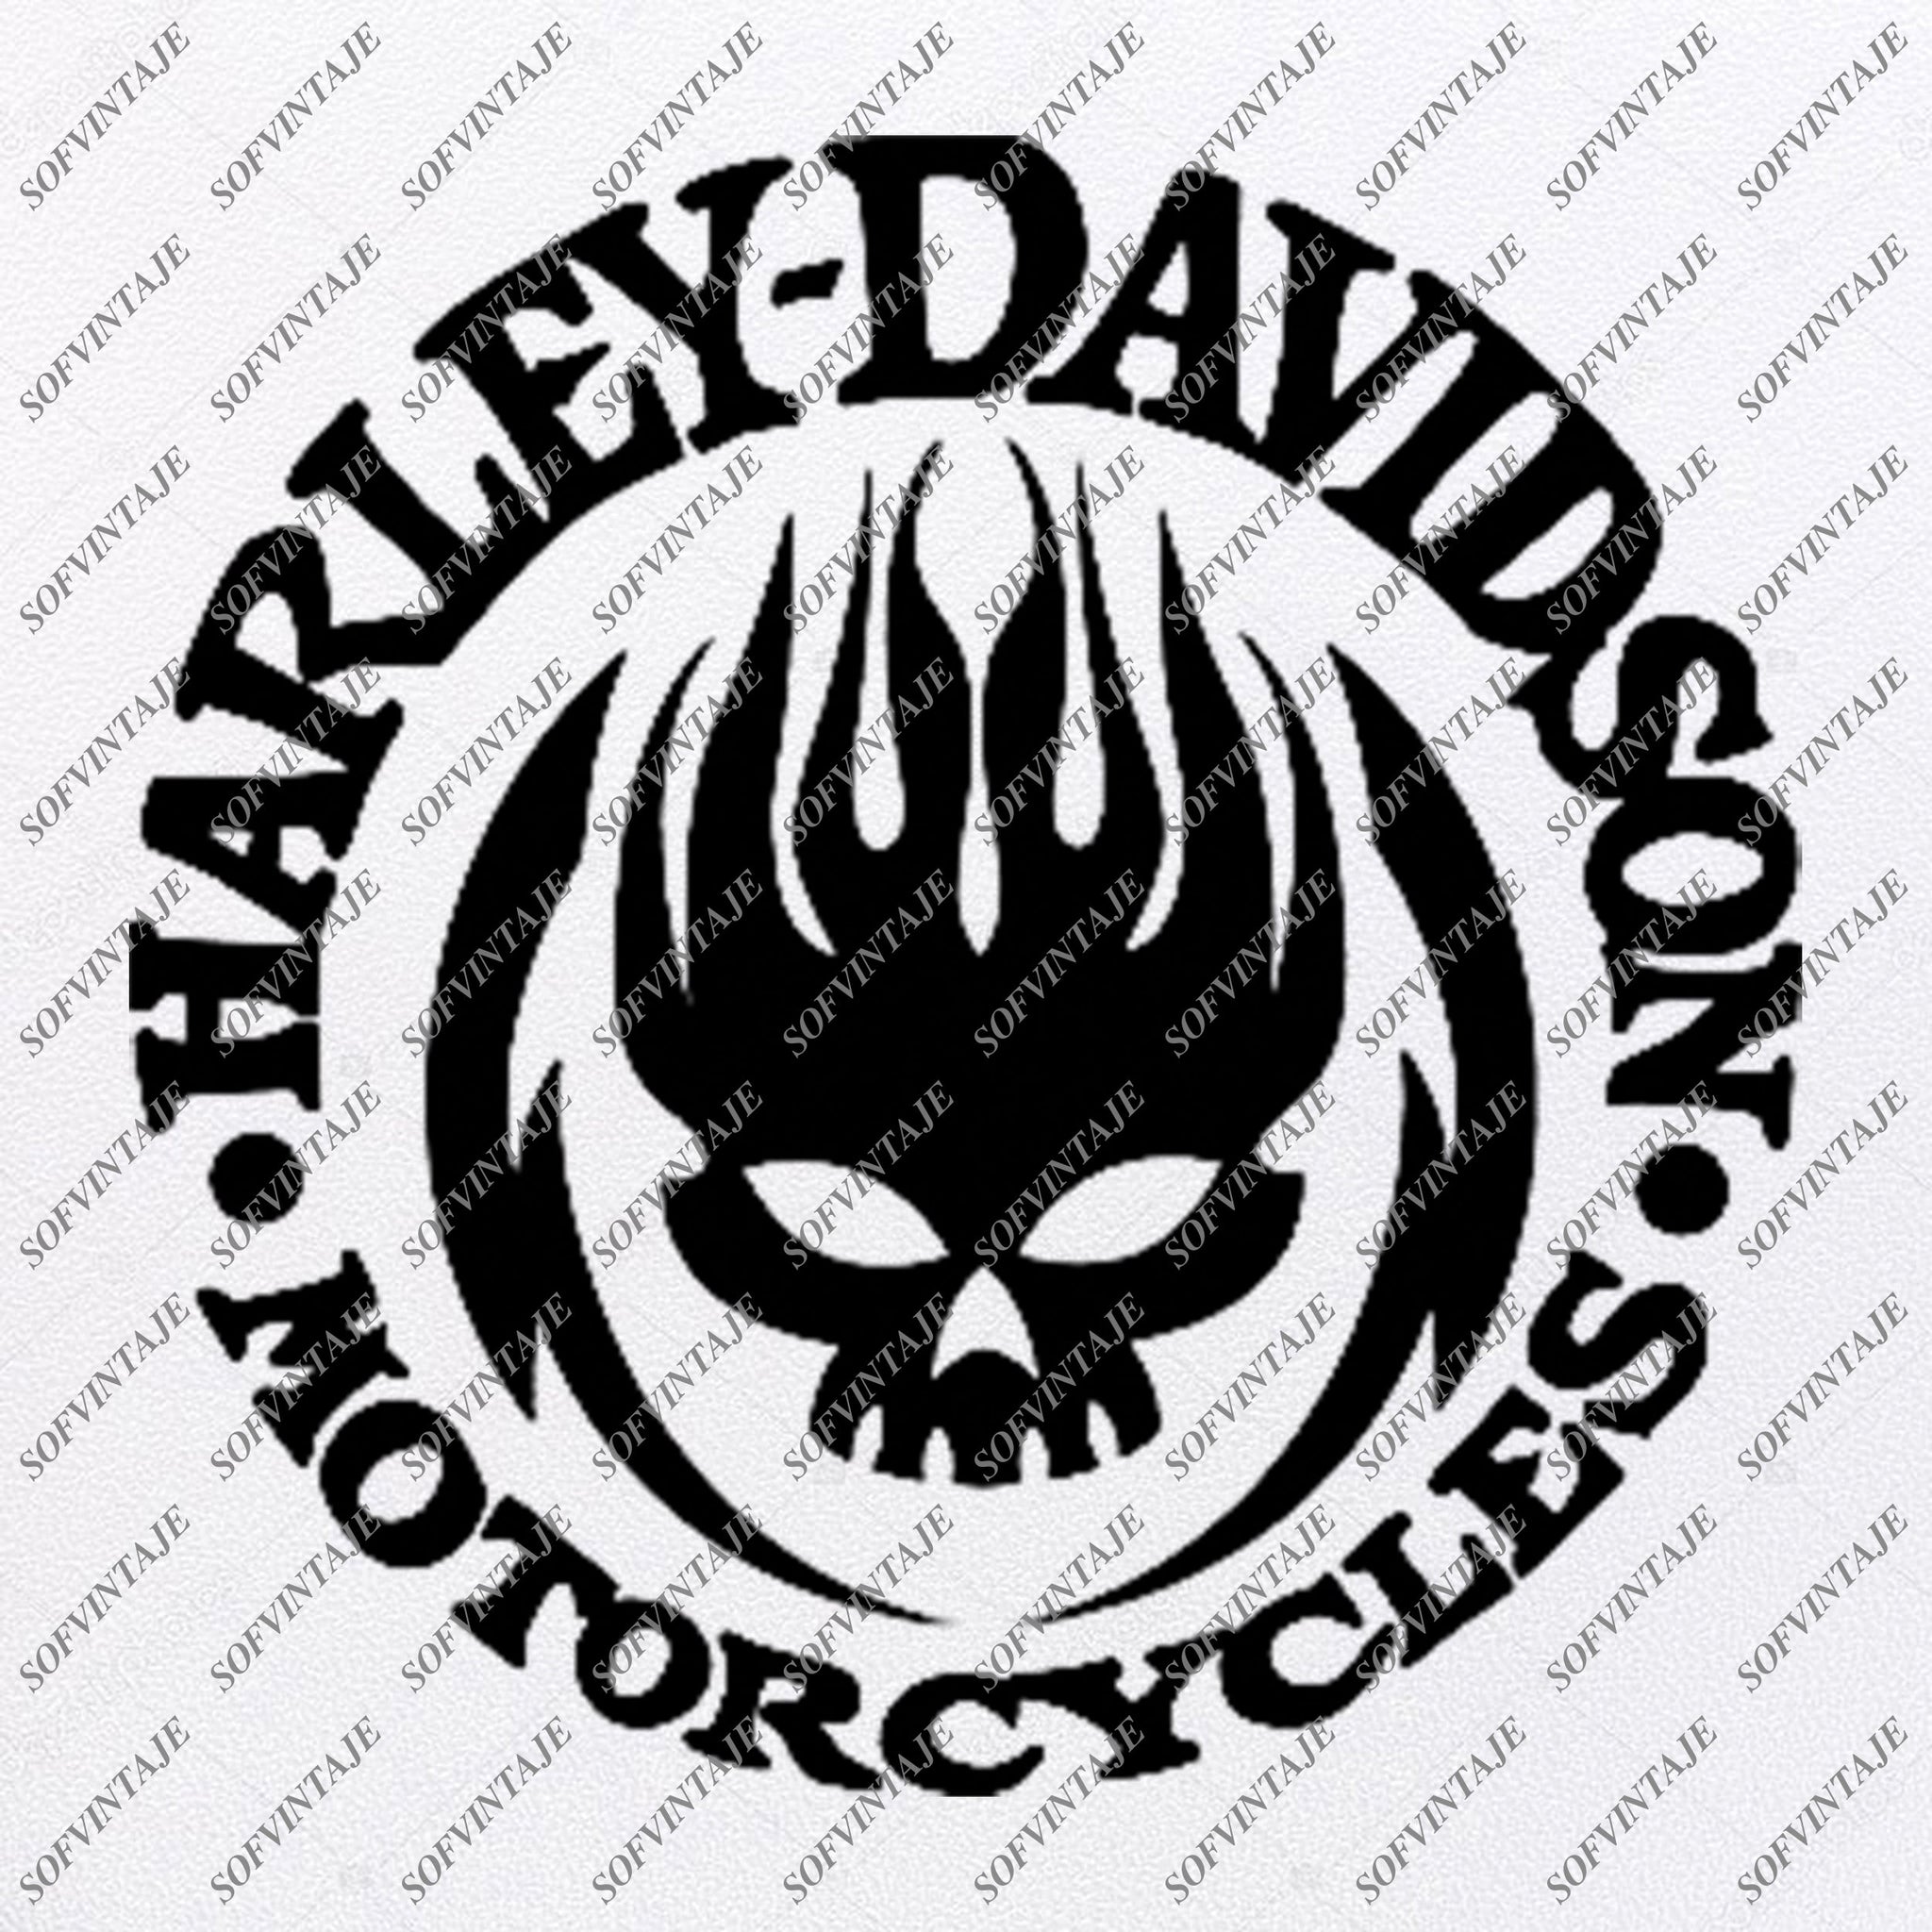 Download Harley Davidson Svg File- Skull Harley Davidson Svg Design ...